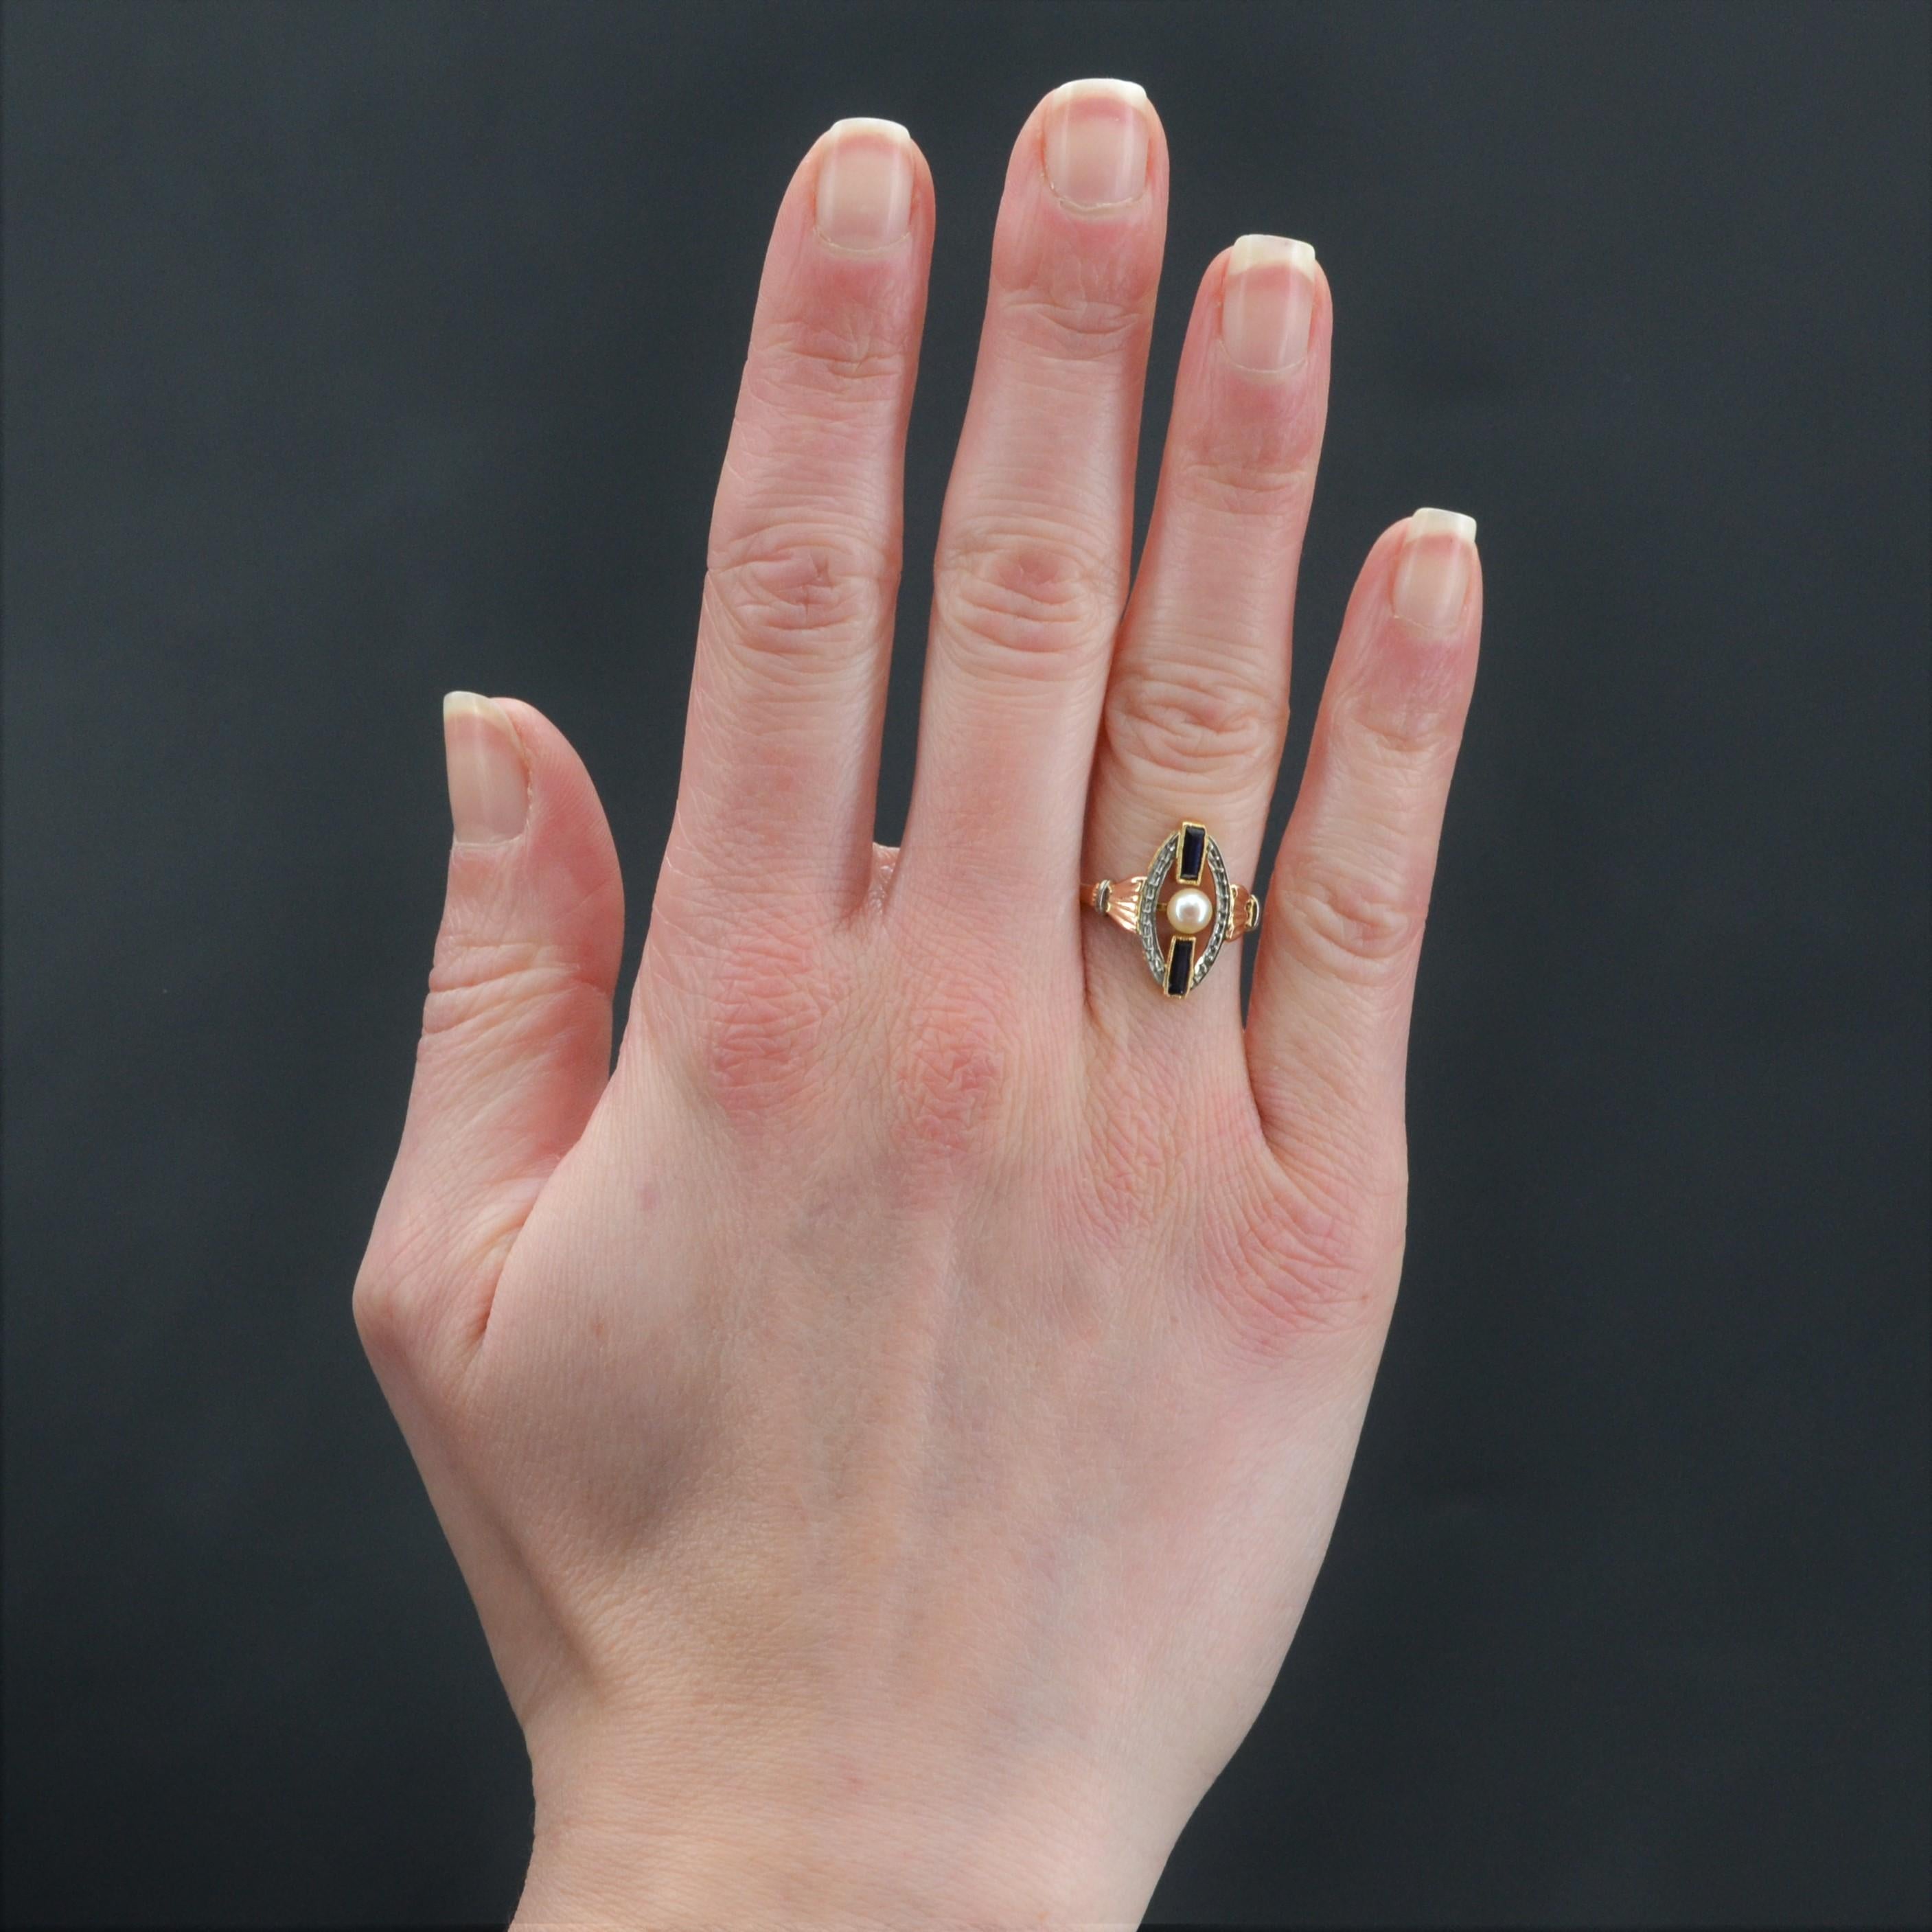 Ring aus 18 Karat Rosé- und Weißgold, Eulenpunze.
Die durchbrochene Fassung dieses Art-Déco-Rings ist oval ziseliert und mit 2 synthetischen Saphiren im Baguetteschliff und einer vermeintlich feinen Perle in der Mitte geschmückt. Auf beiden Seiten